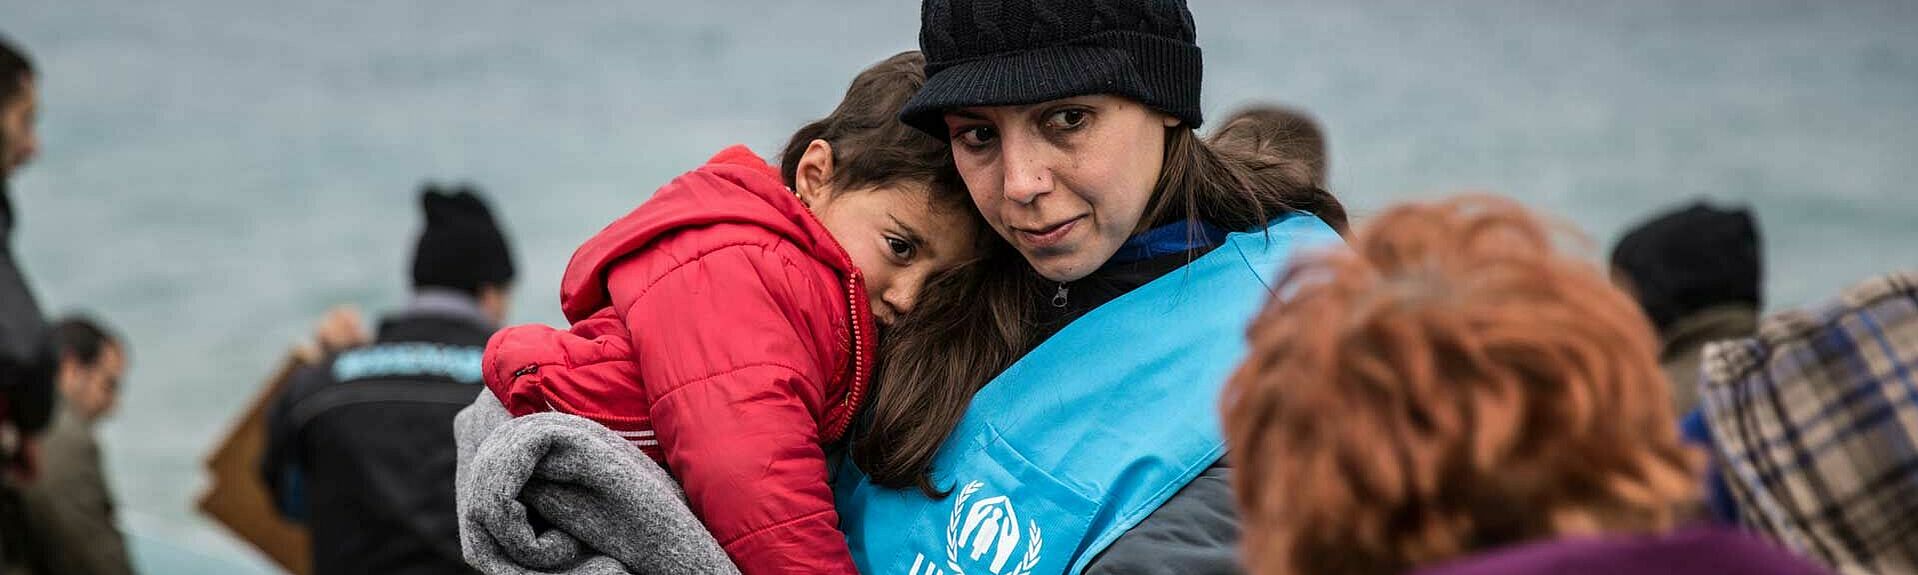 UNHCR-Helferin mit Kind auf dem Arm